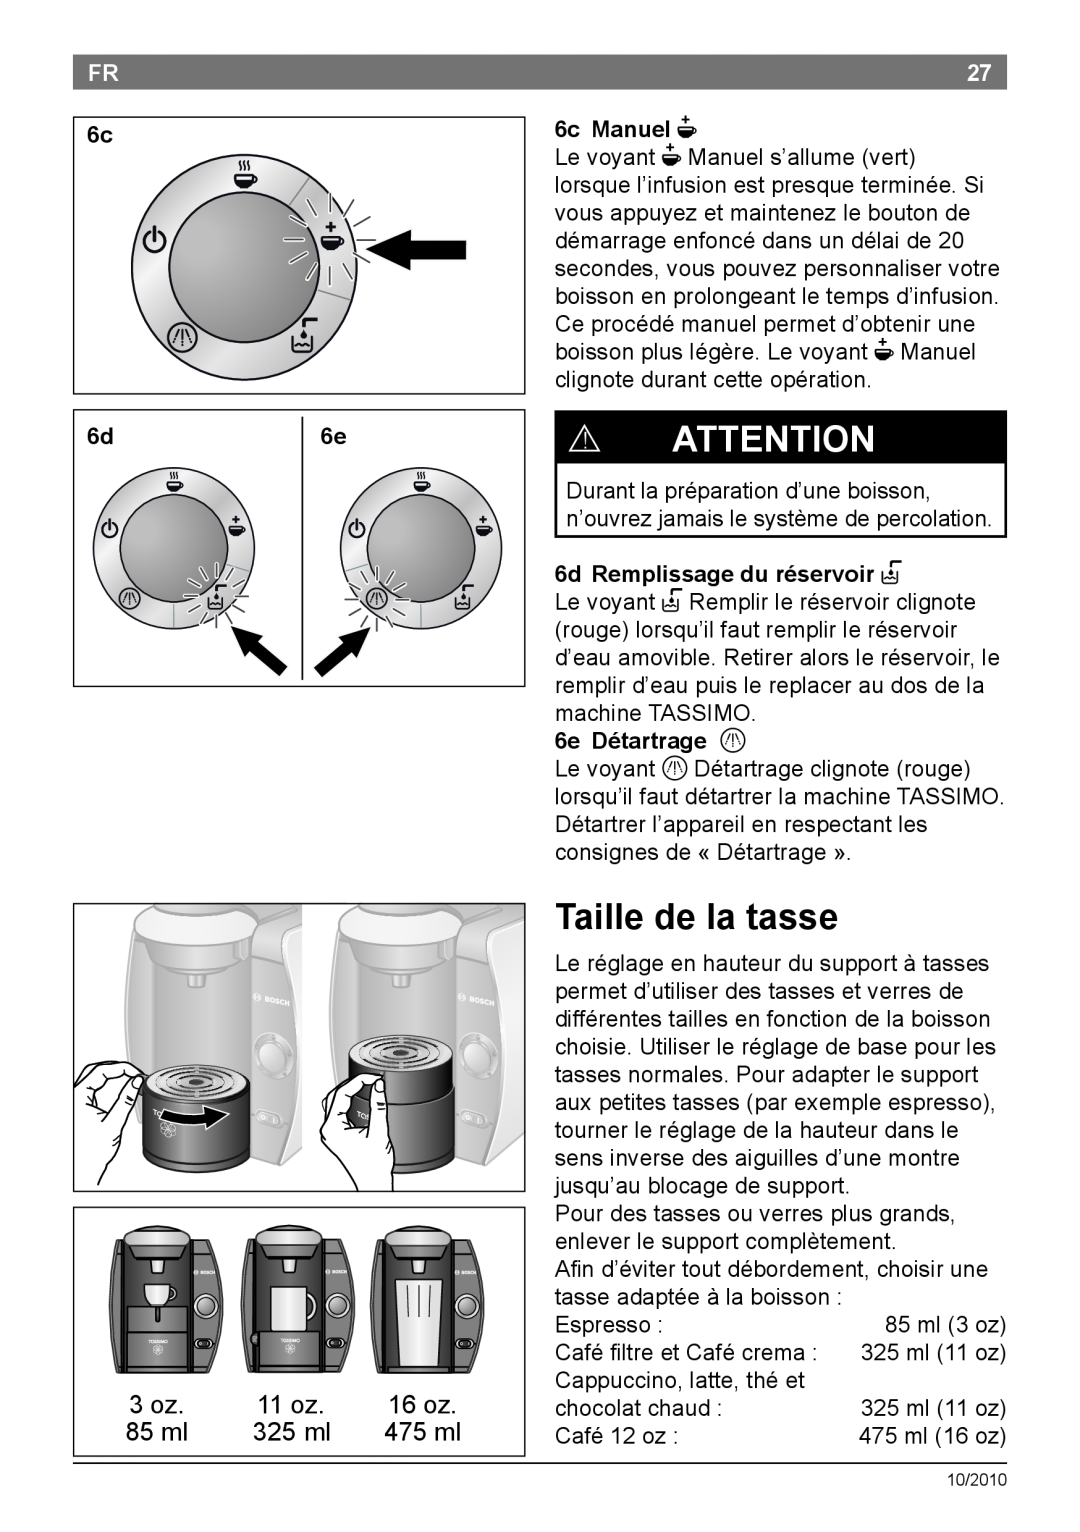 Bosch Appliances T45 Taille de la tasse, 6c Manuel N, 6d Remplissage du réservoir P, 6e Détartrage Q, ! Attention, 16 oz 